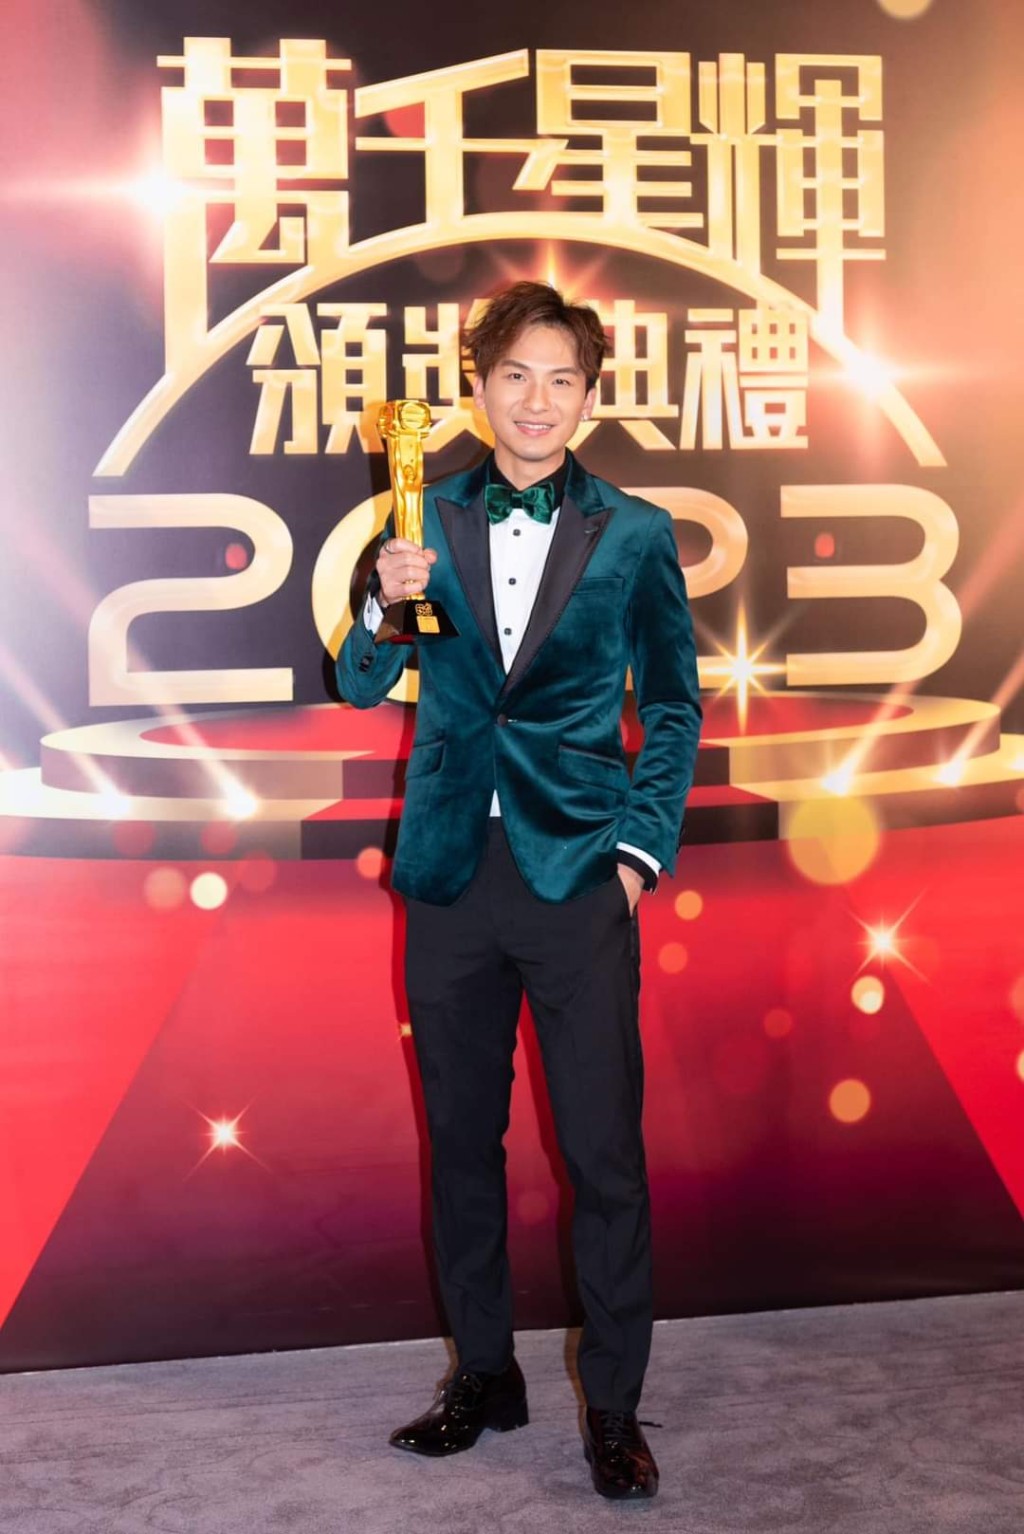 吉吉封王的《中年好聲音》奪台慶頒獎禮「最佳綜藝節目」獎。